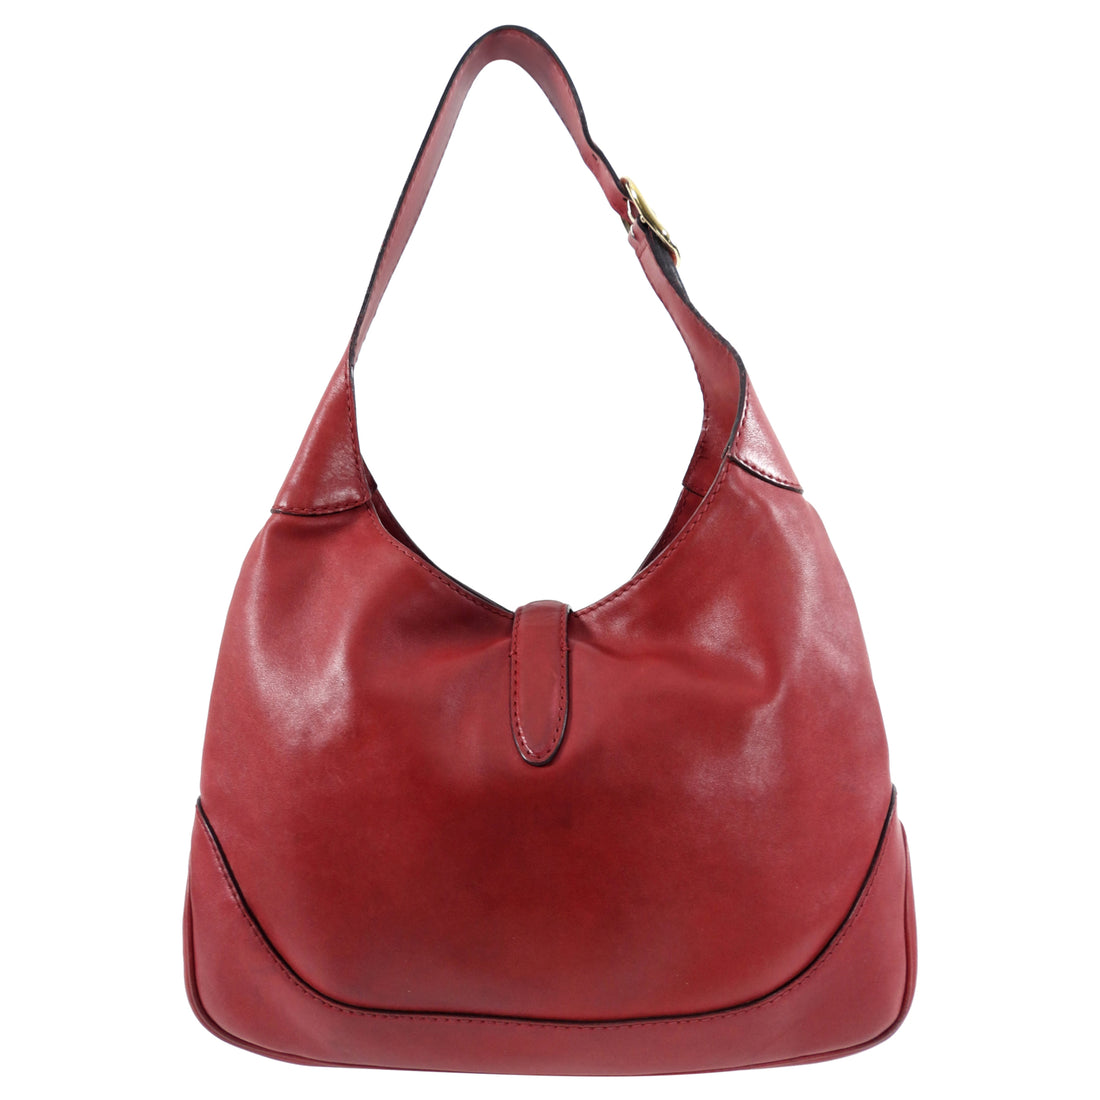 Gucci Red Leather Jackie Hobo Shoulder Bag – I MISS YOU VINTAGE